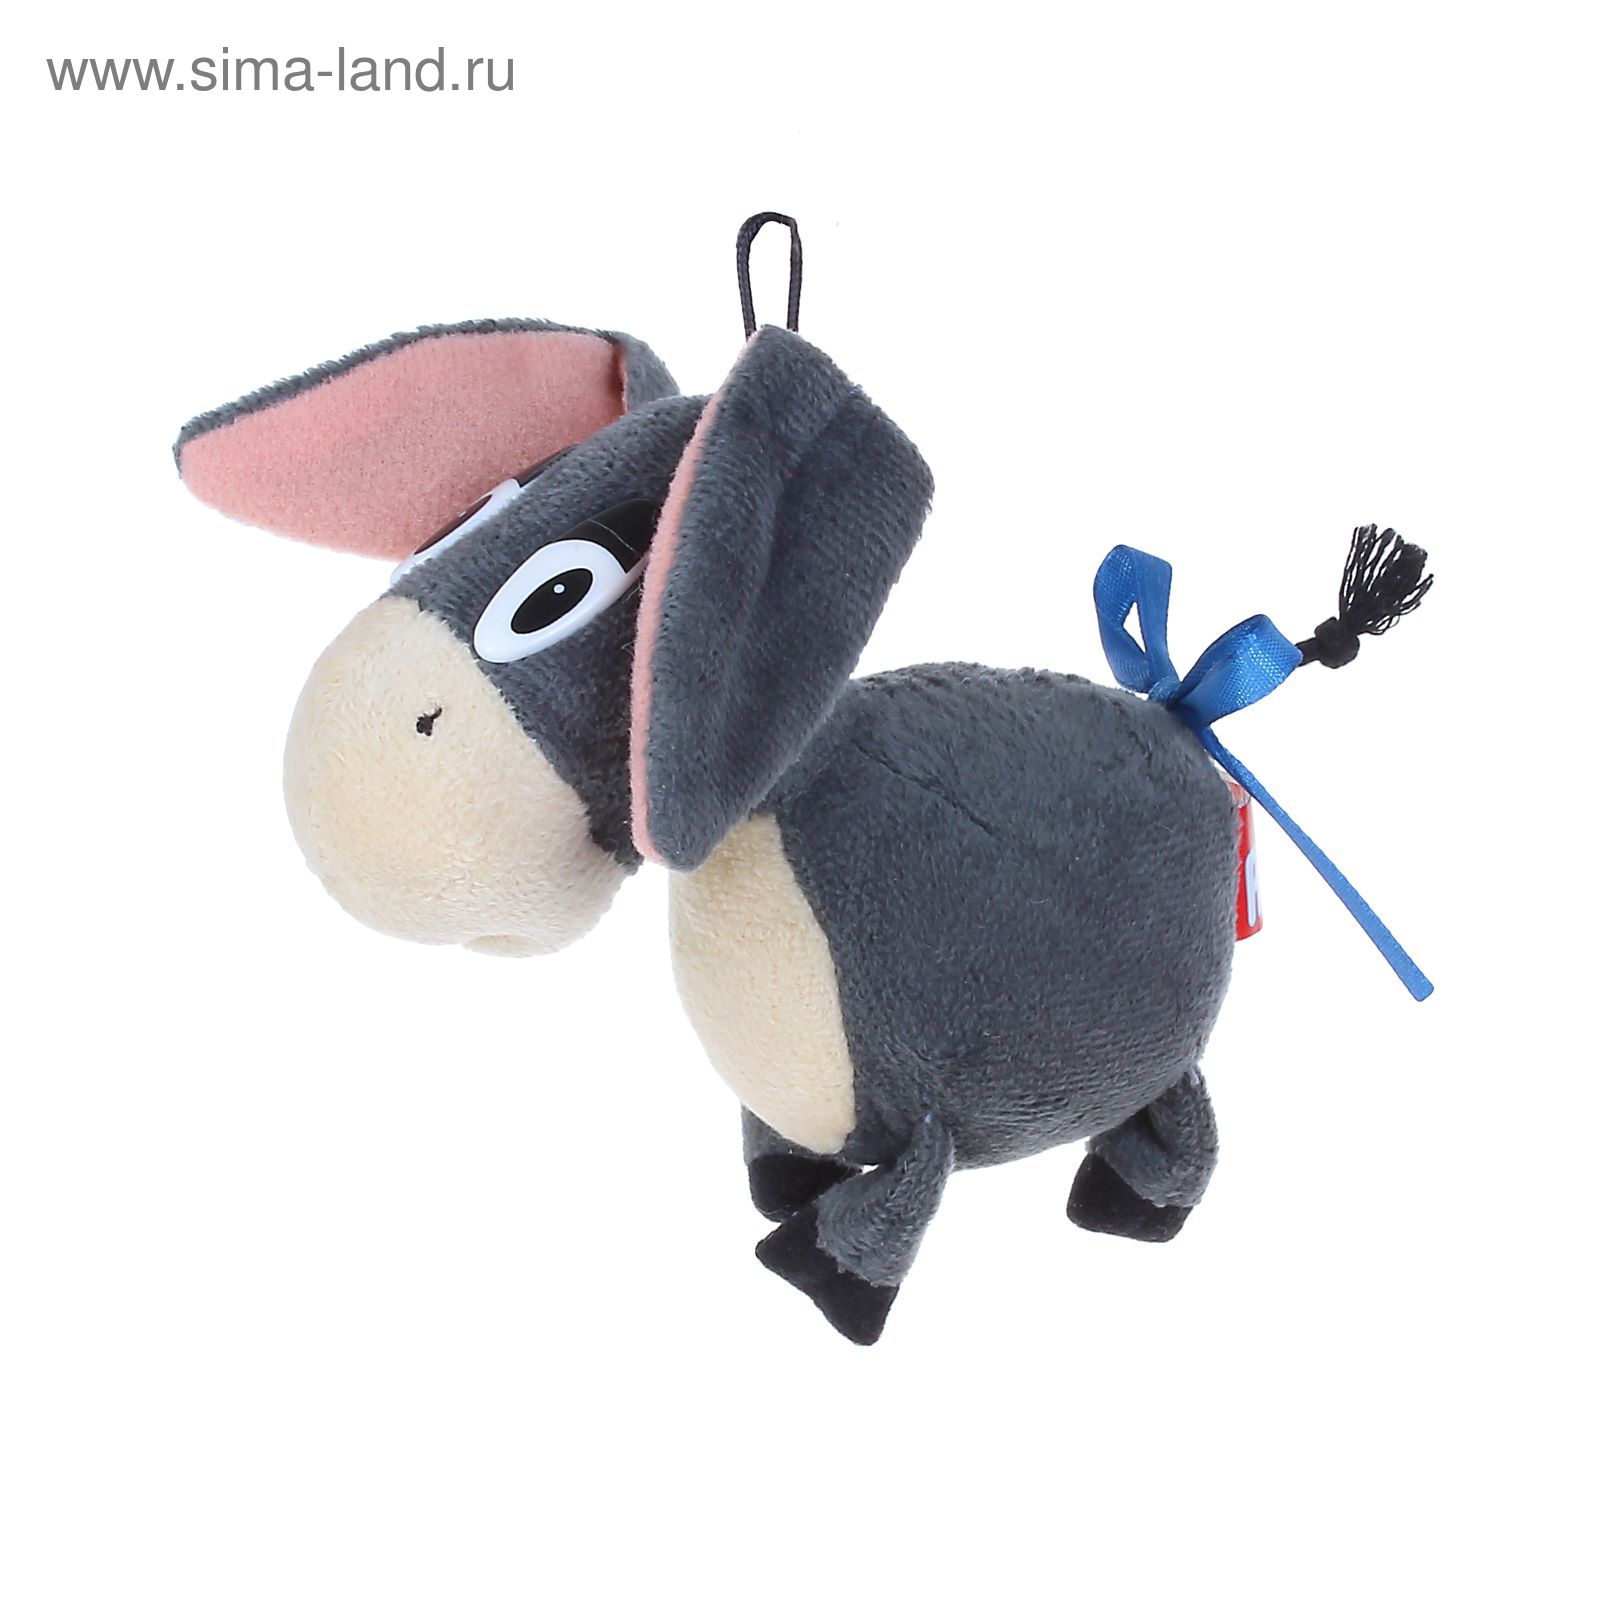 Мягкая игрушка Ослик Иа (синий) купить в Минске, цена в Беларуси